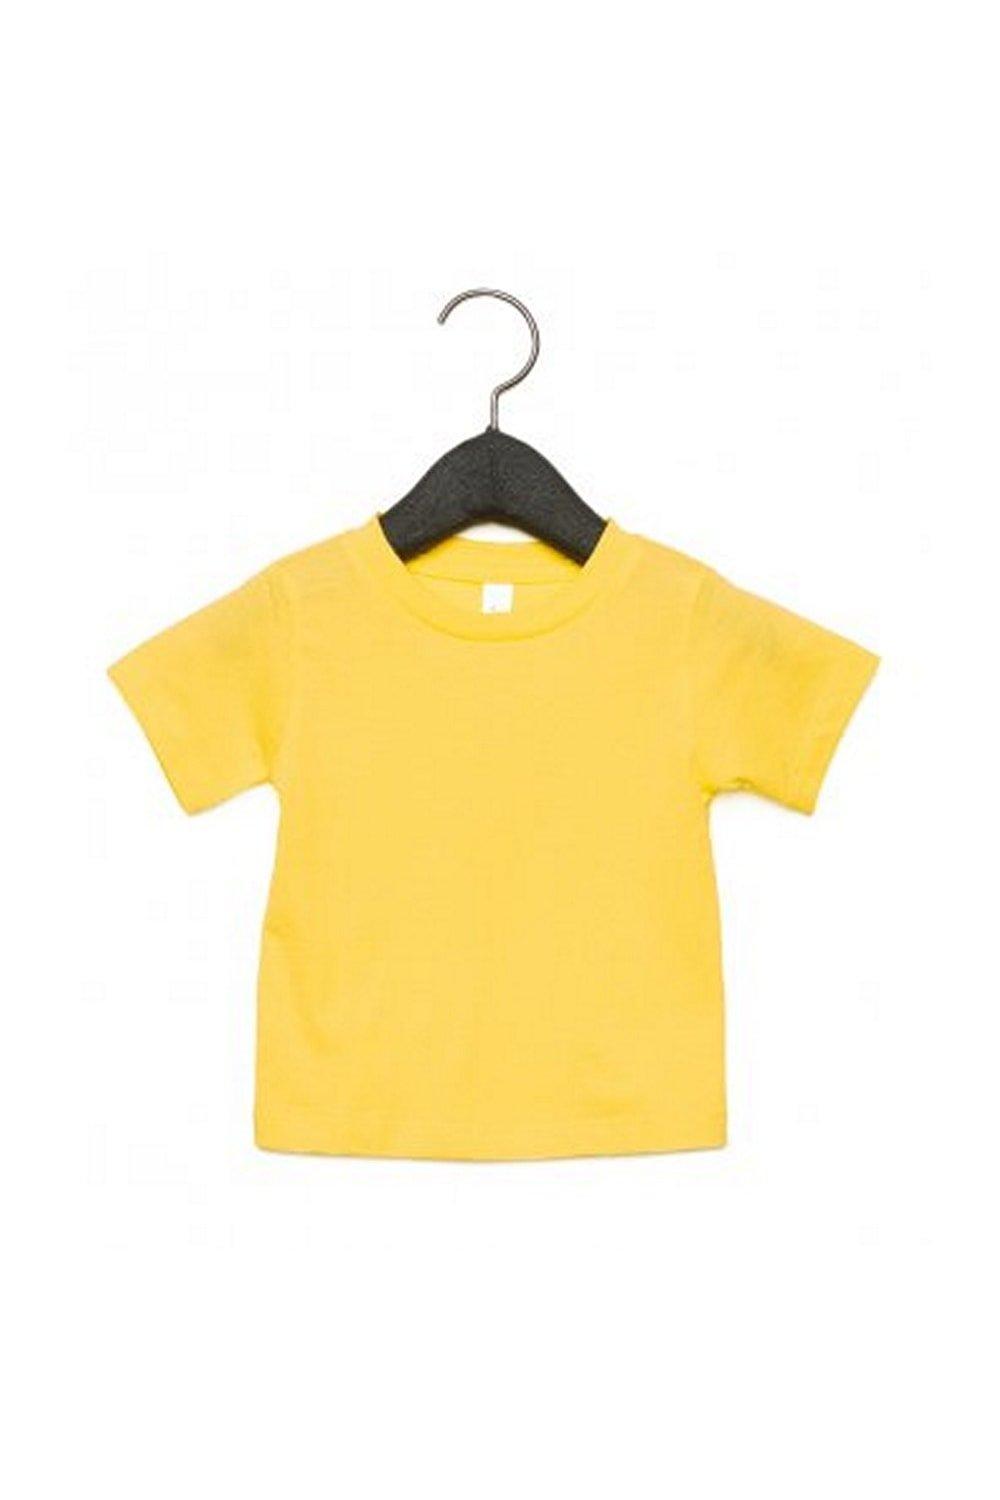 Детская футболка с круглым вырезом Bella + Canvas, желтый